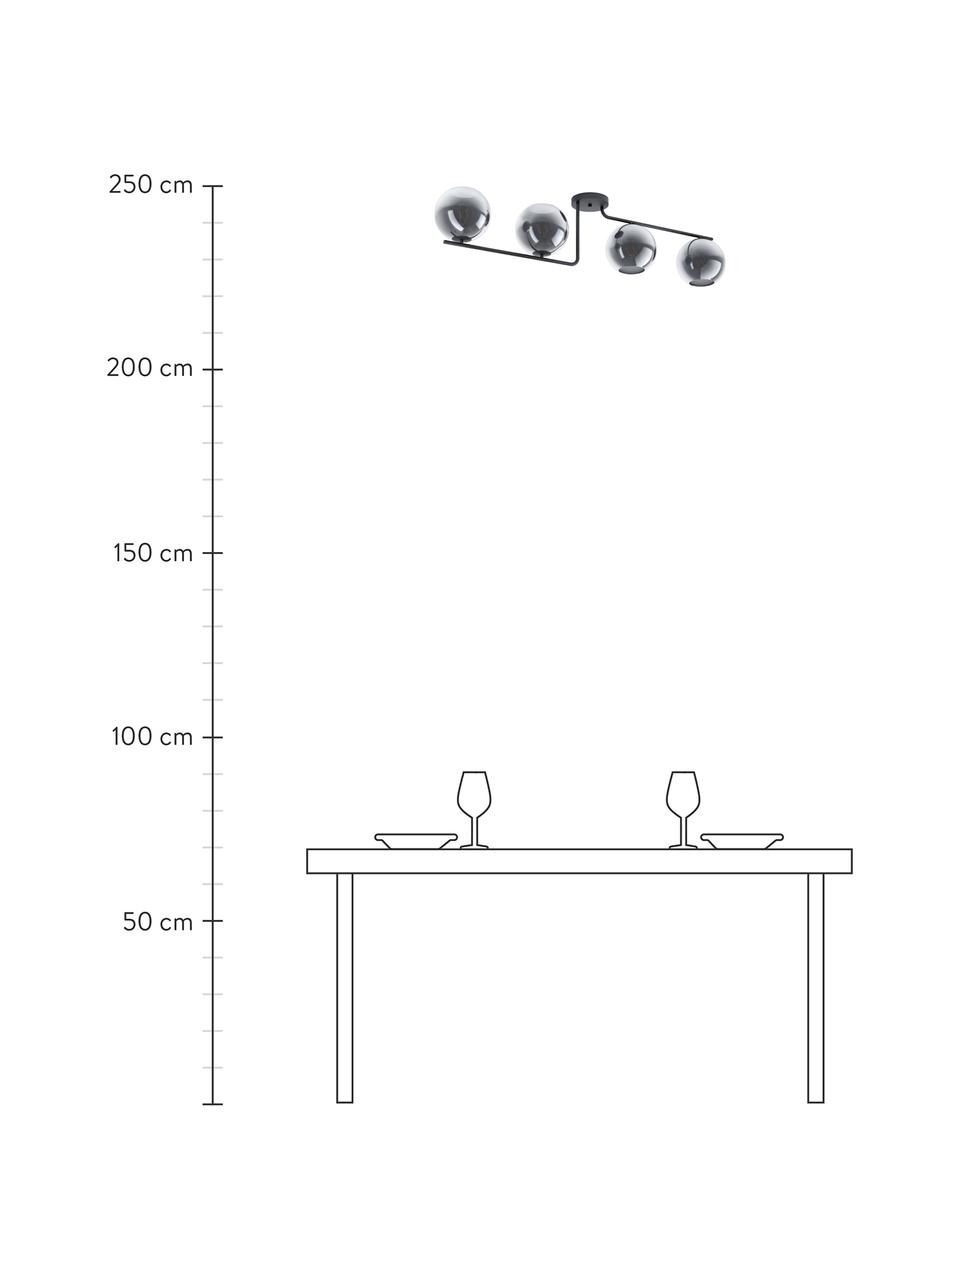 Grote Design plafondlamp Marojales van glas, Baldakijn: gecoat staal, Zwart, grijs, transparant, B 122 x H 28 cm